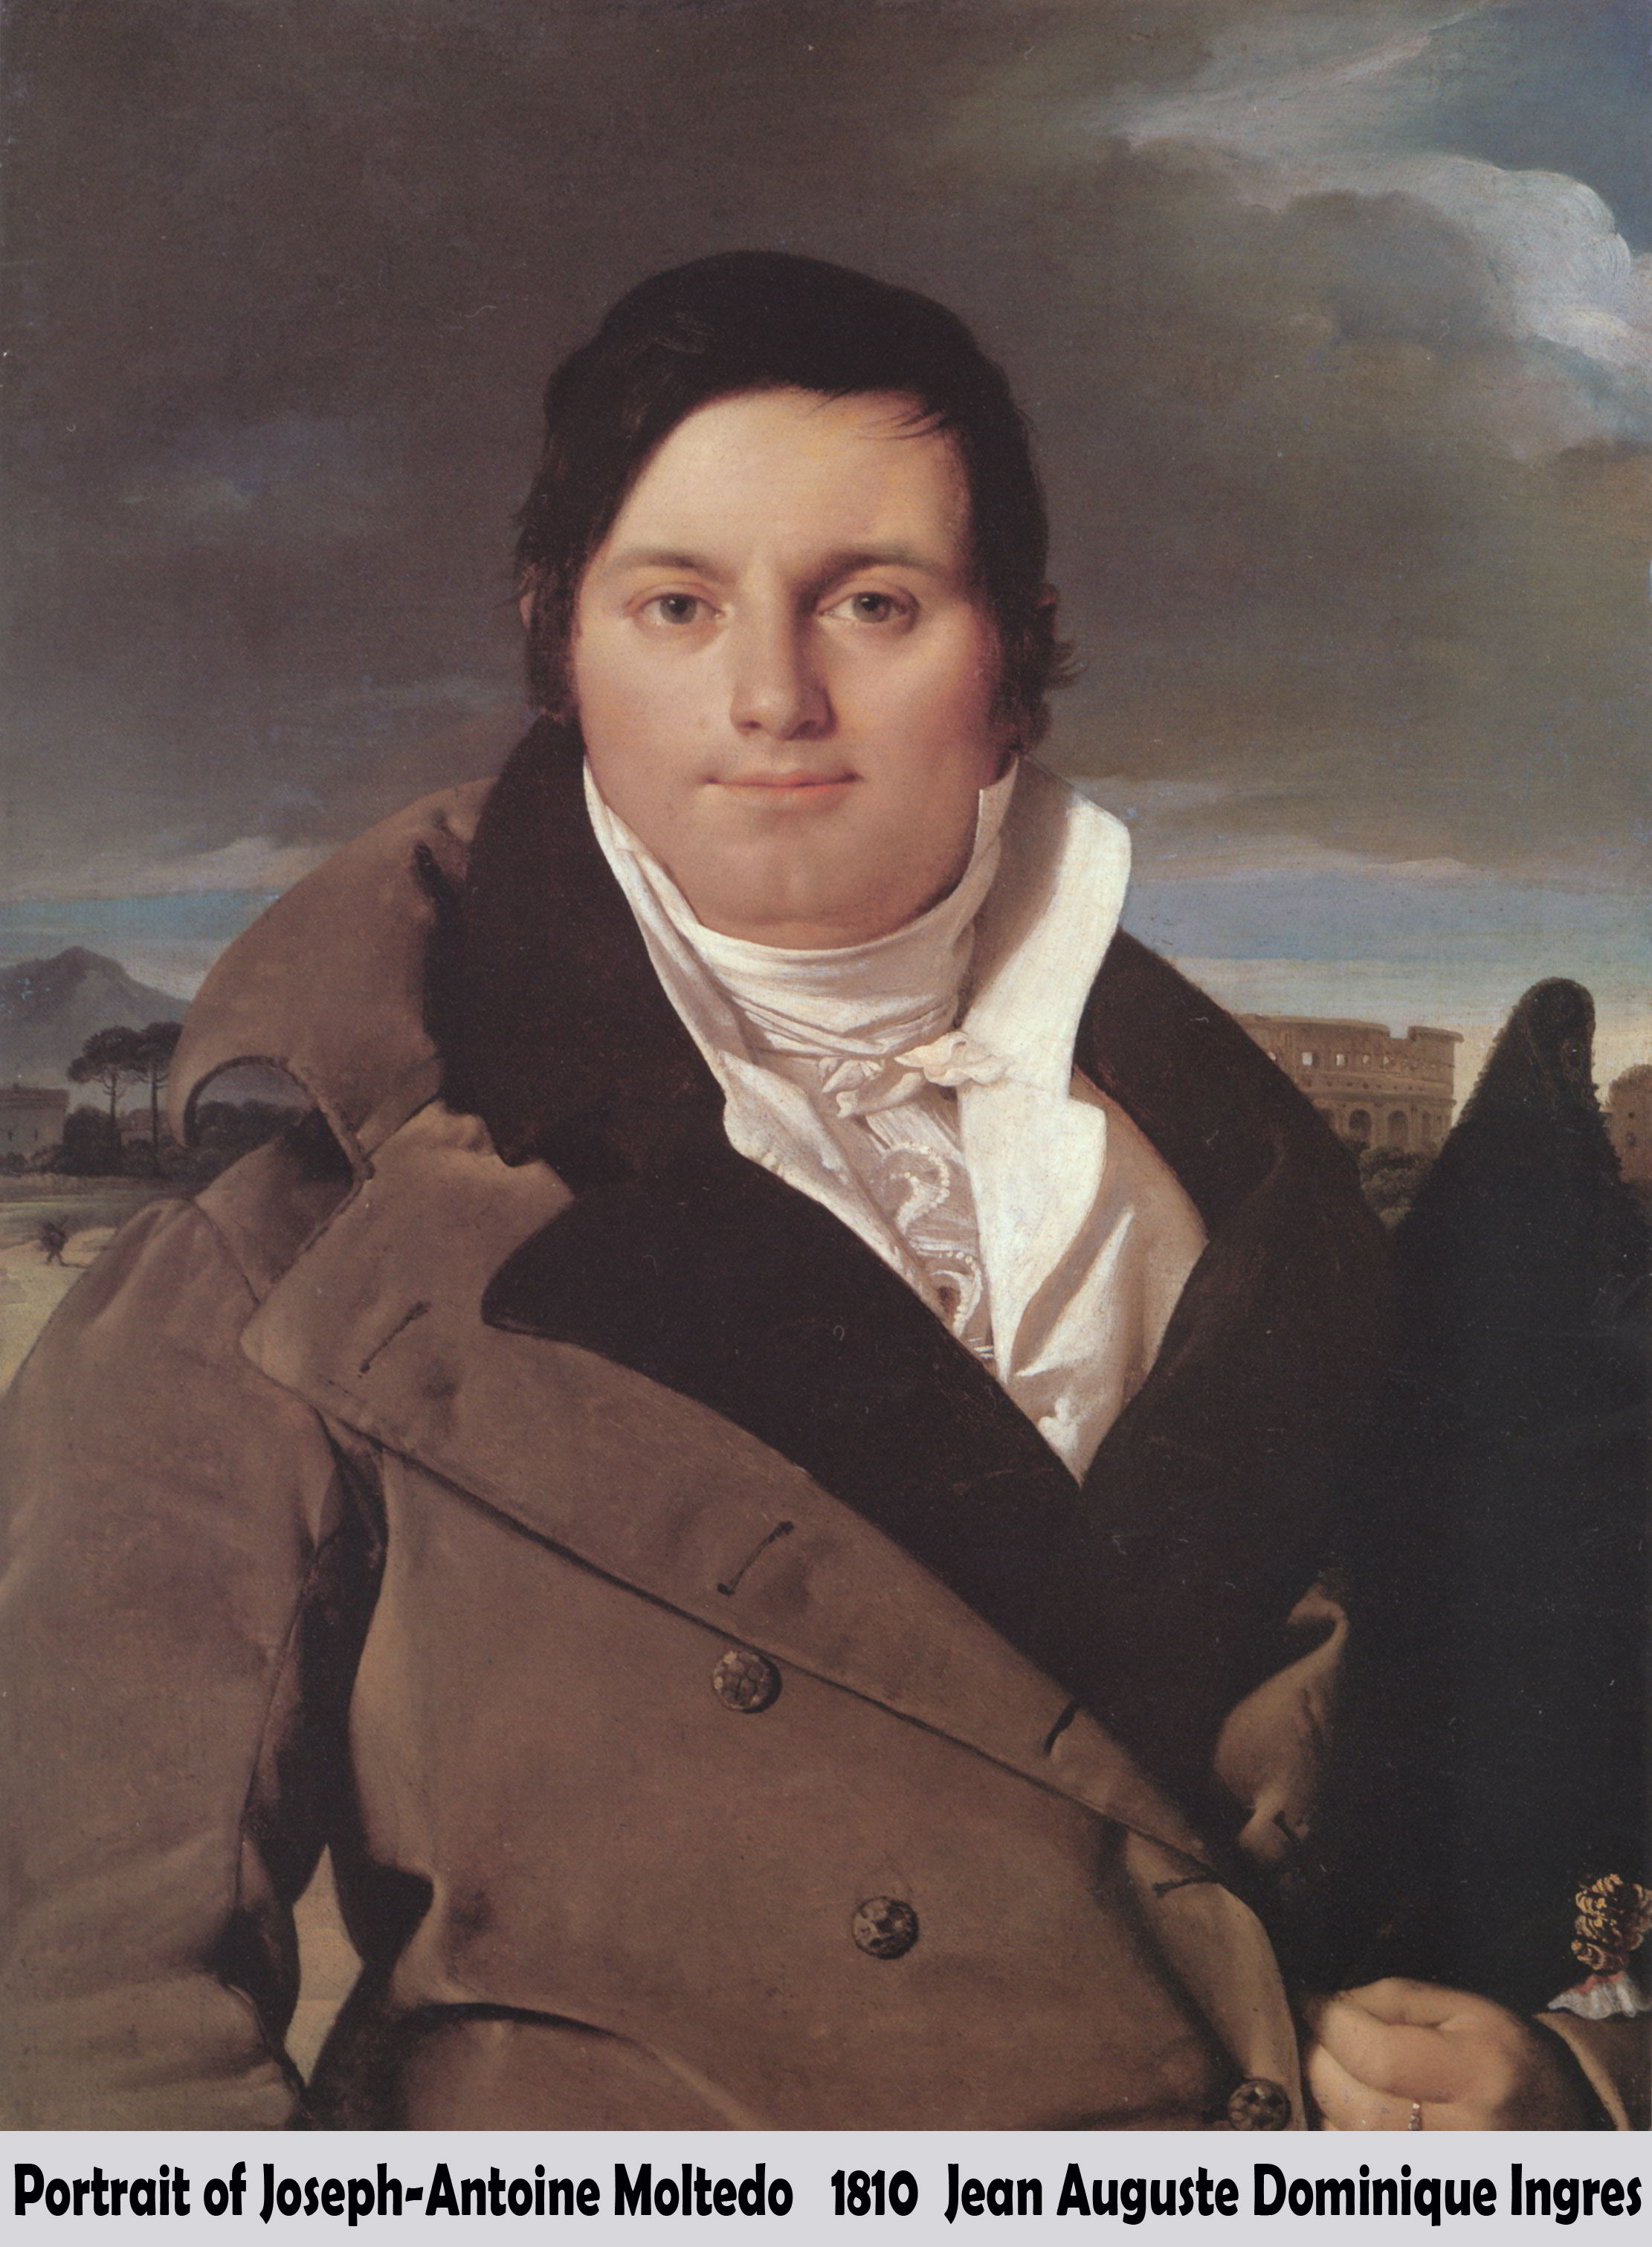 Portrait of Joseph-Antoine Moltedo by Jean Auguste Dominique Ingres-Portrait Painting